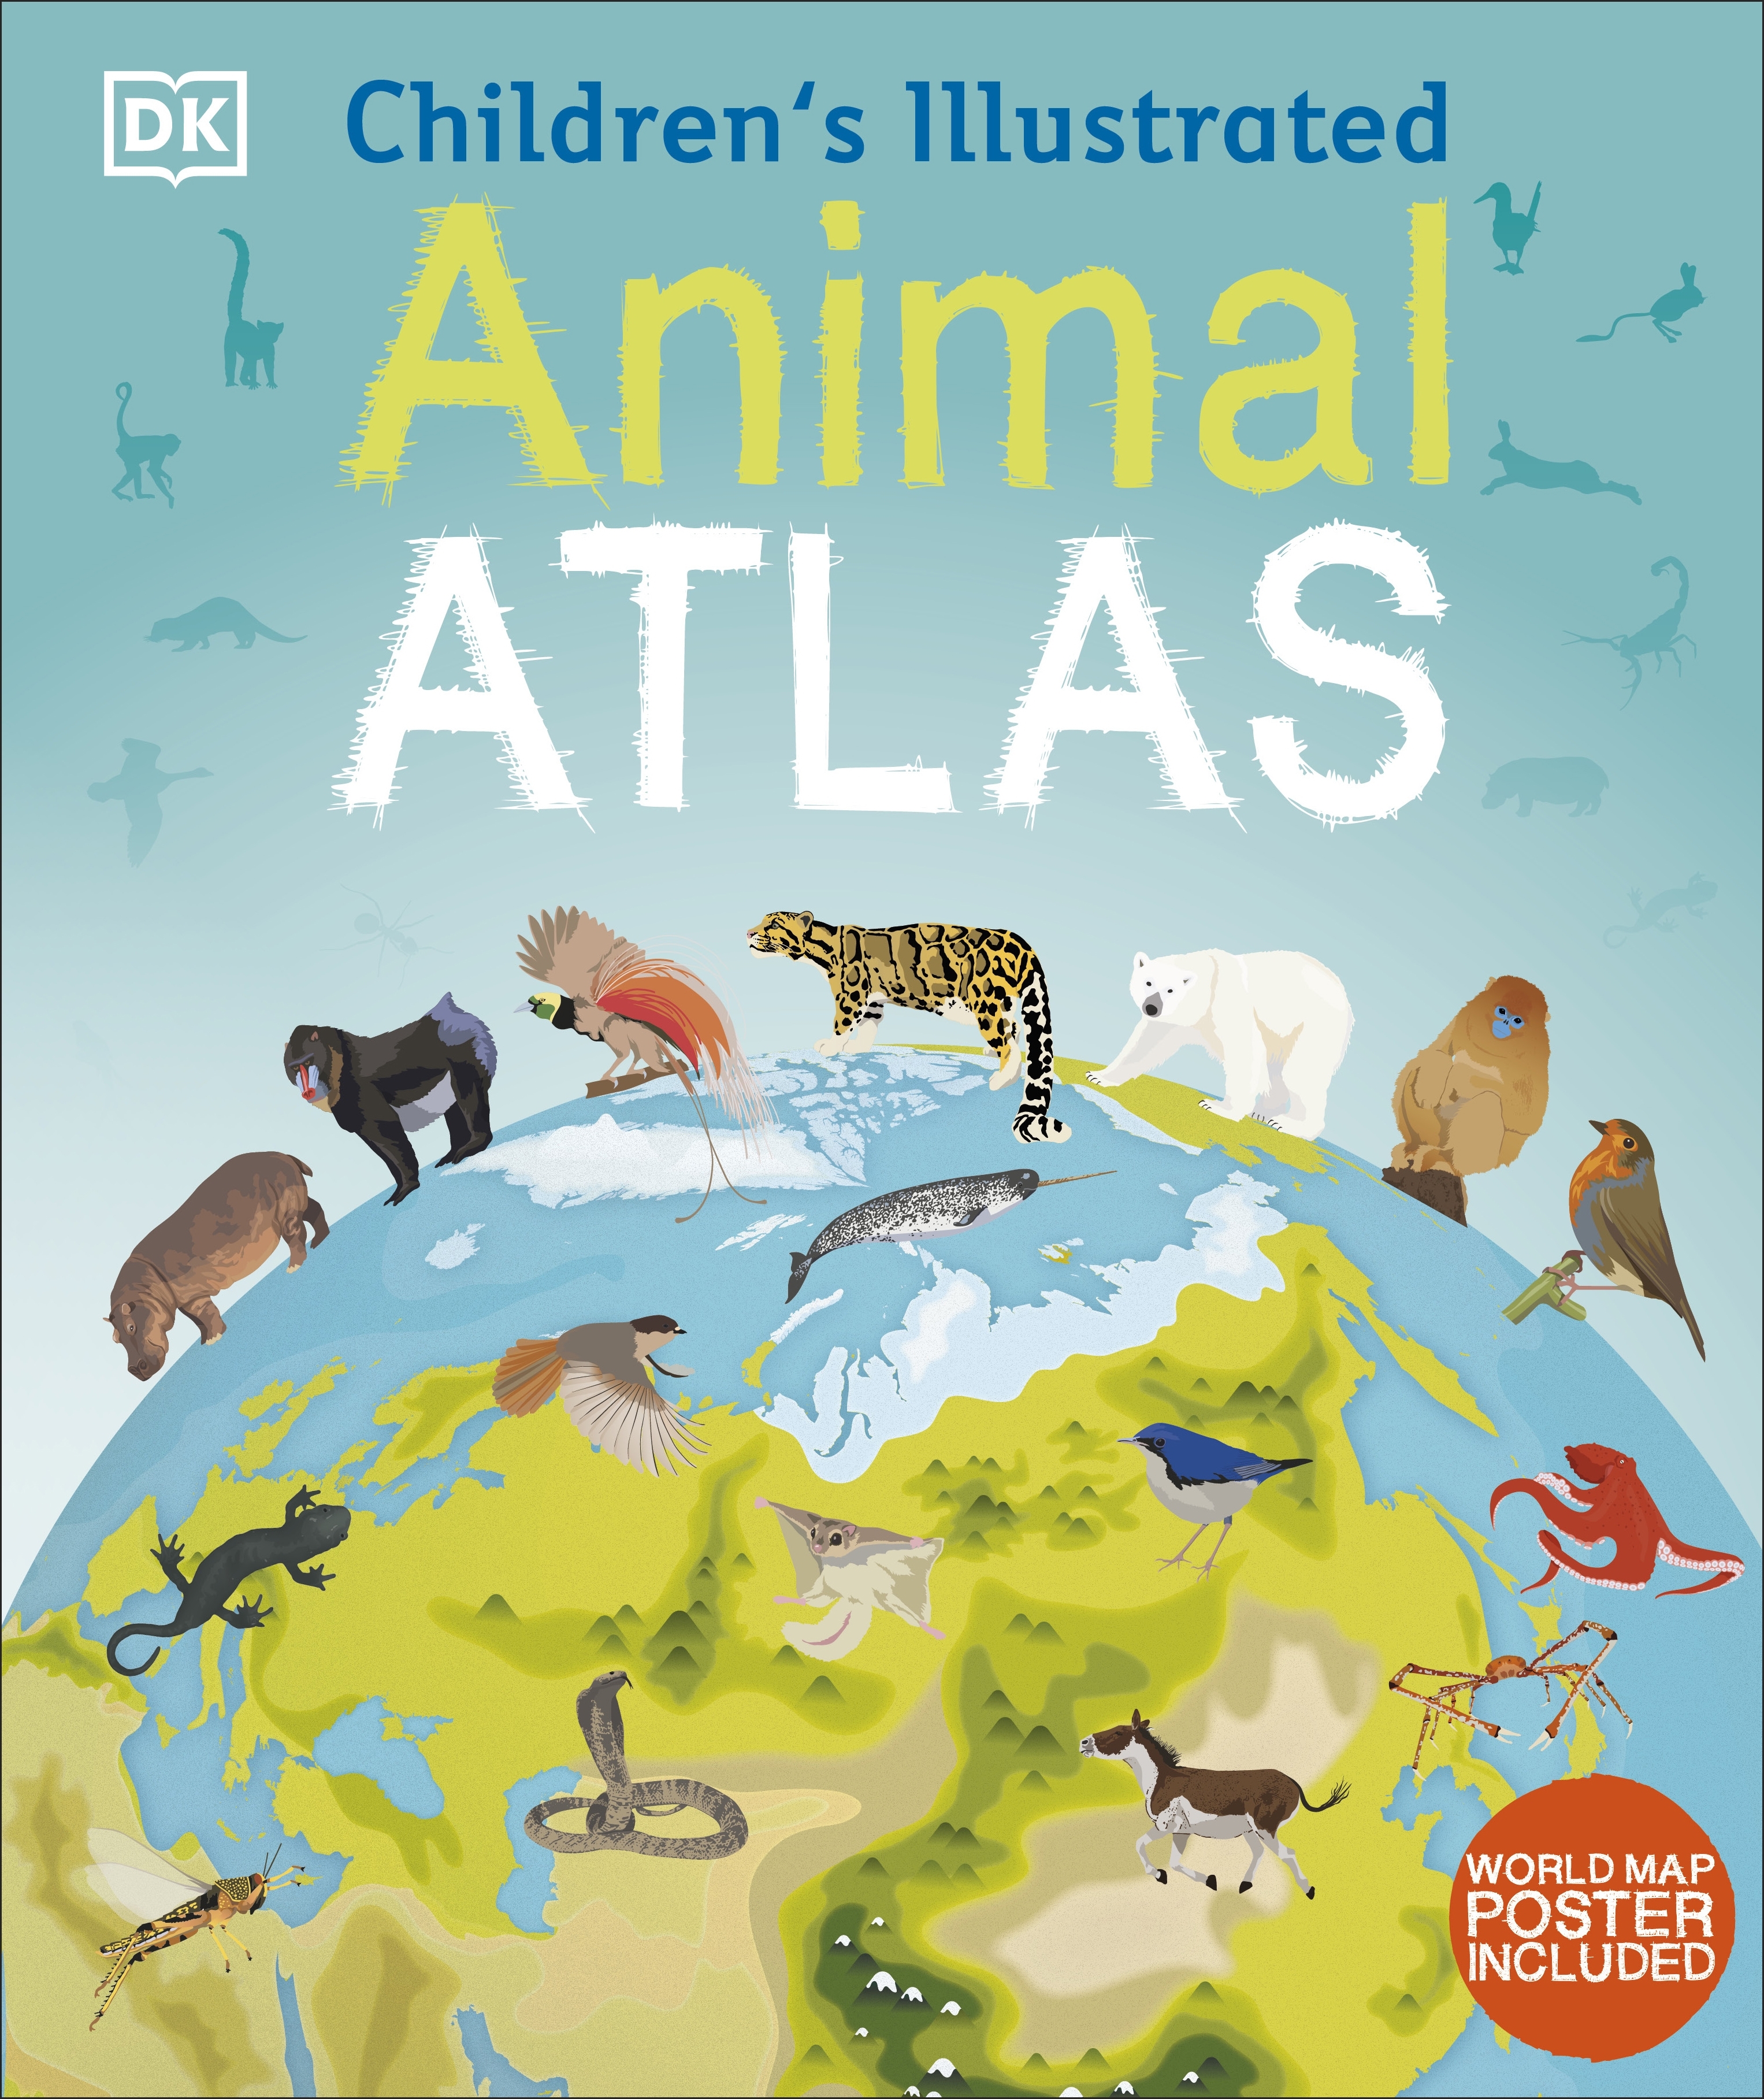 Children's Illustrated Animal Atlas by DK - Penguin Books New Zealand